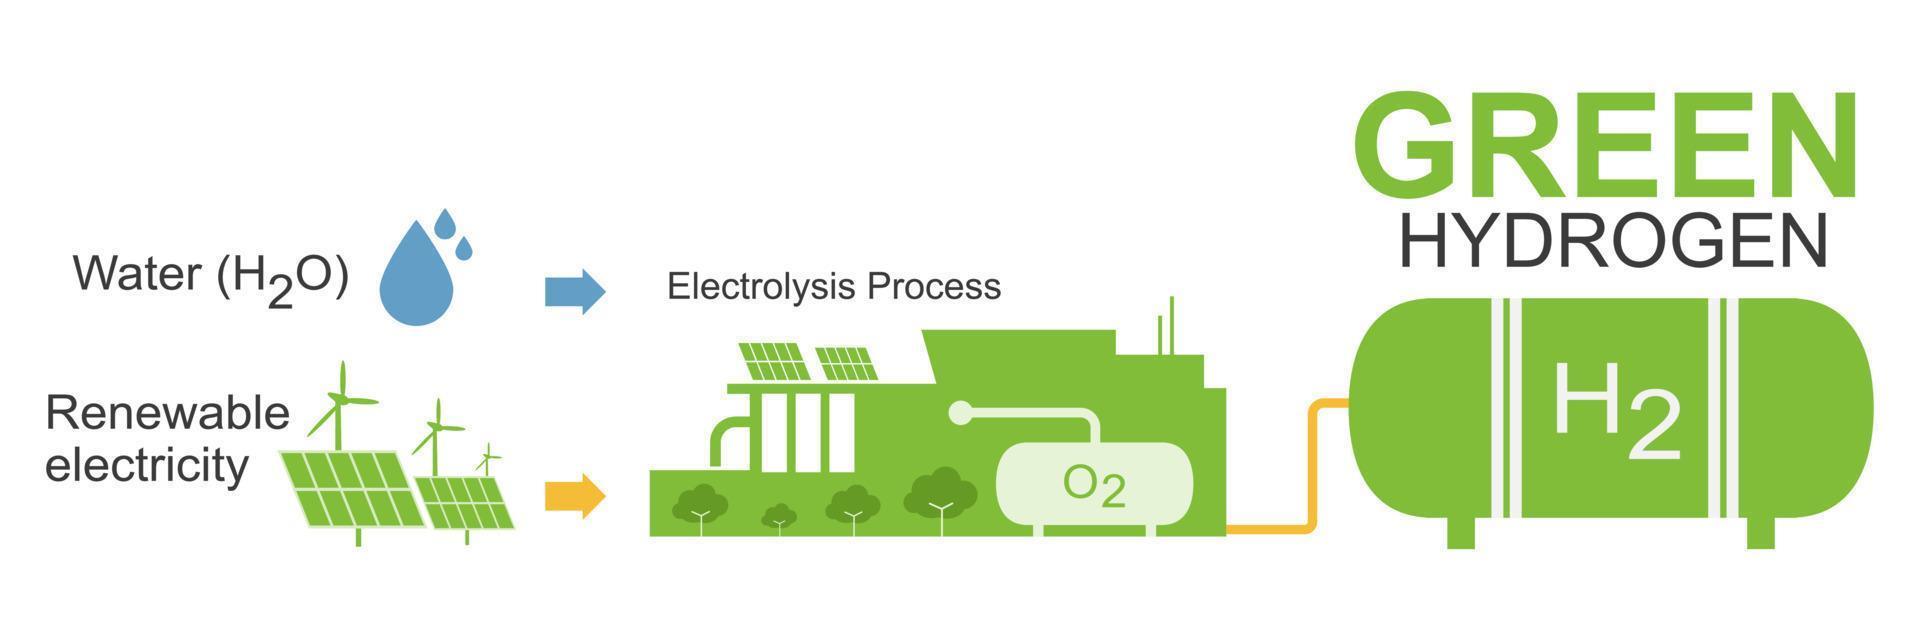 typ av väte produktion grön Färg elektrolys ekologi för rena energi på vilket sätt arbete diagram begrepp illustration vektor